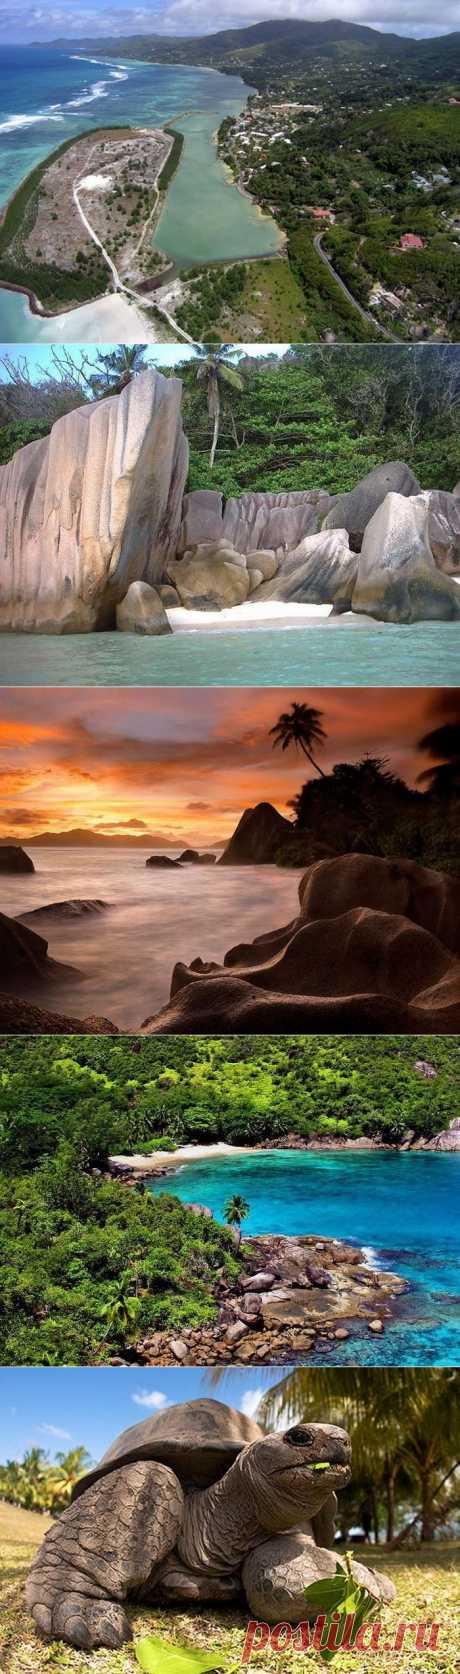 Сейшельские острова в Африке — одно из самых красивых мест в мире.